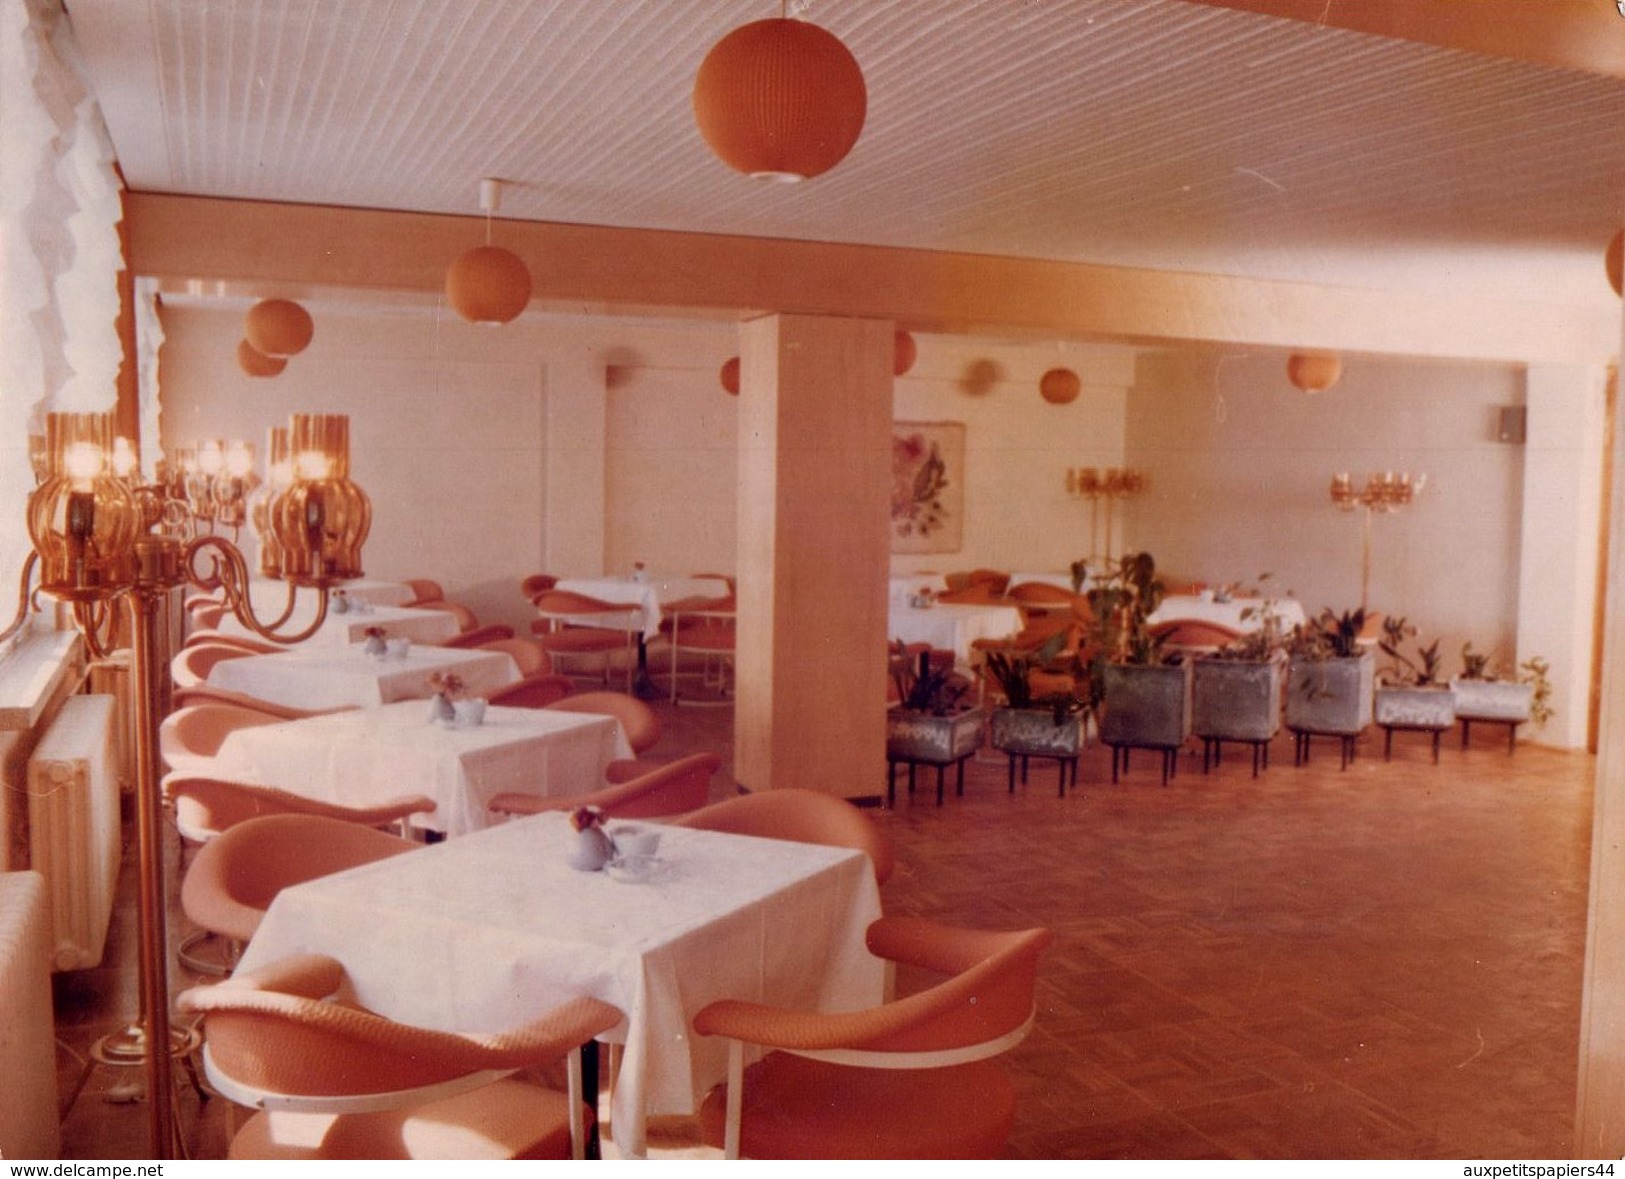 Photo Originale Kitsch Vintage 70's - 80's - Salle De Café Restaurant, Boules & Fauteuils Oranges & Lampadaires Dorés ! - Objets